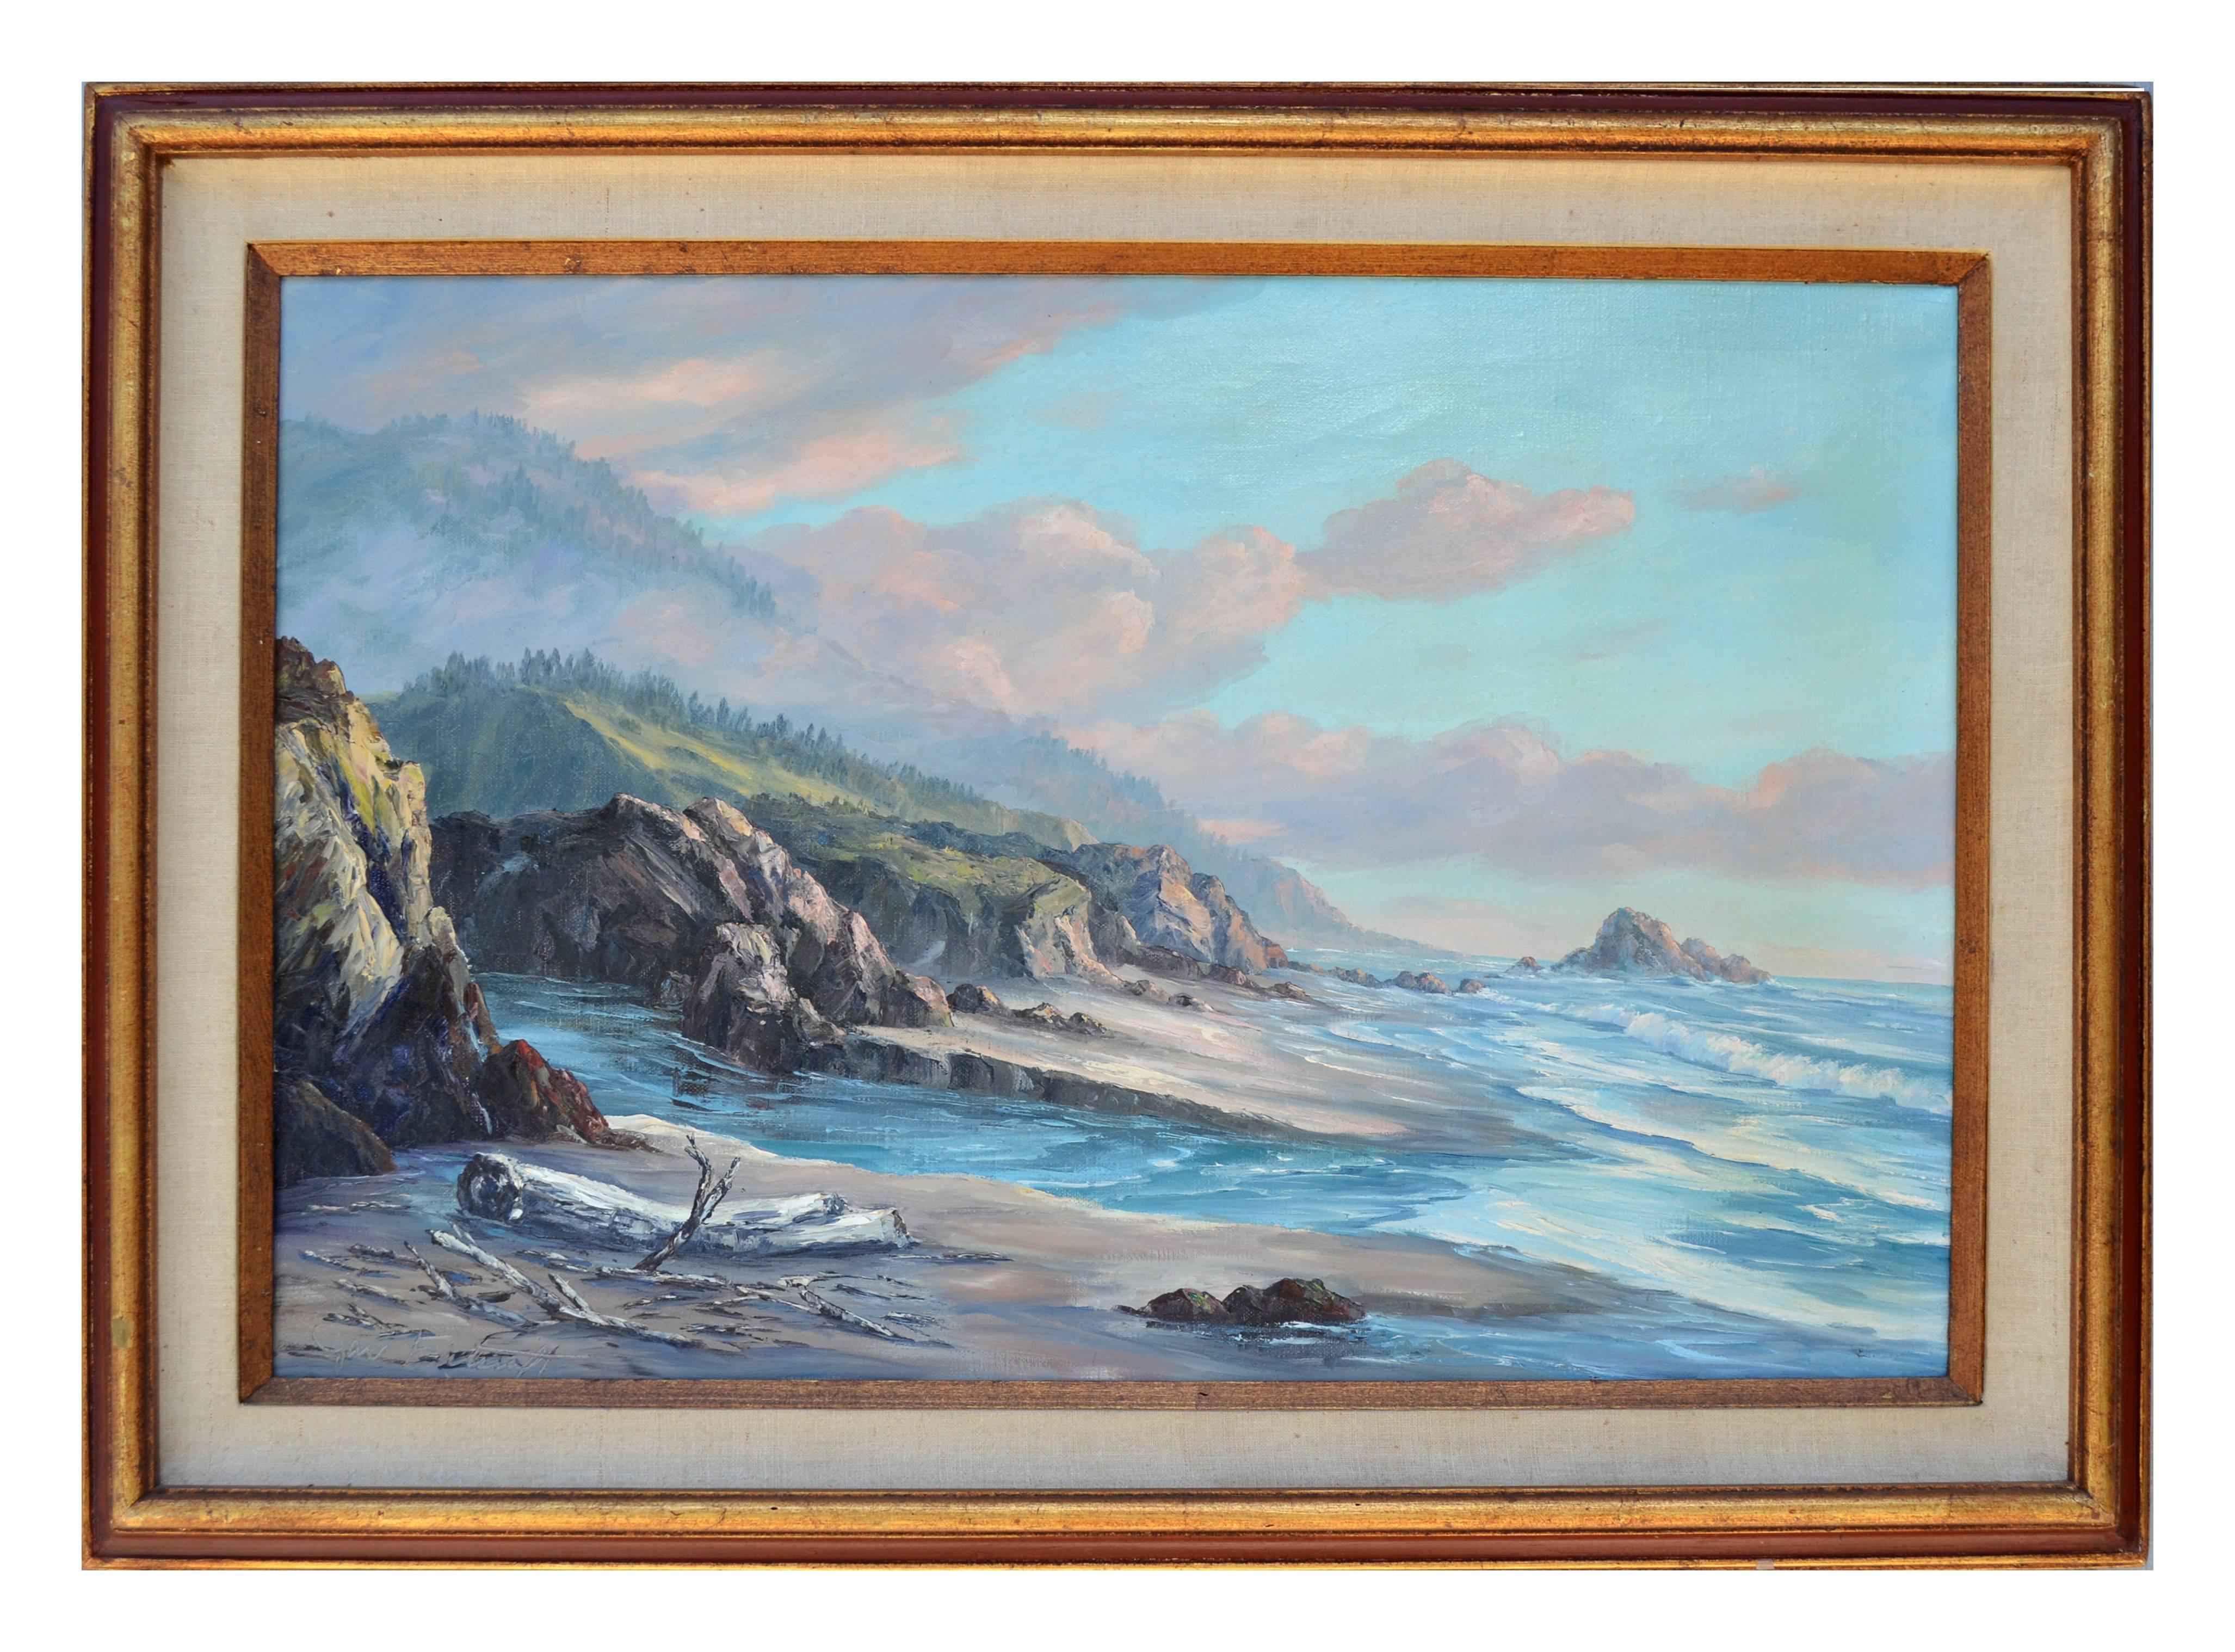 Jac Falcraft Landscape Painting - Vintage Sea View Oil on Canvas Seascape